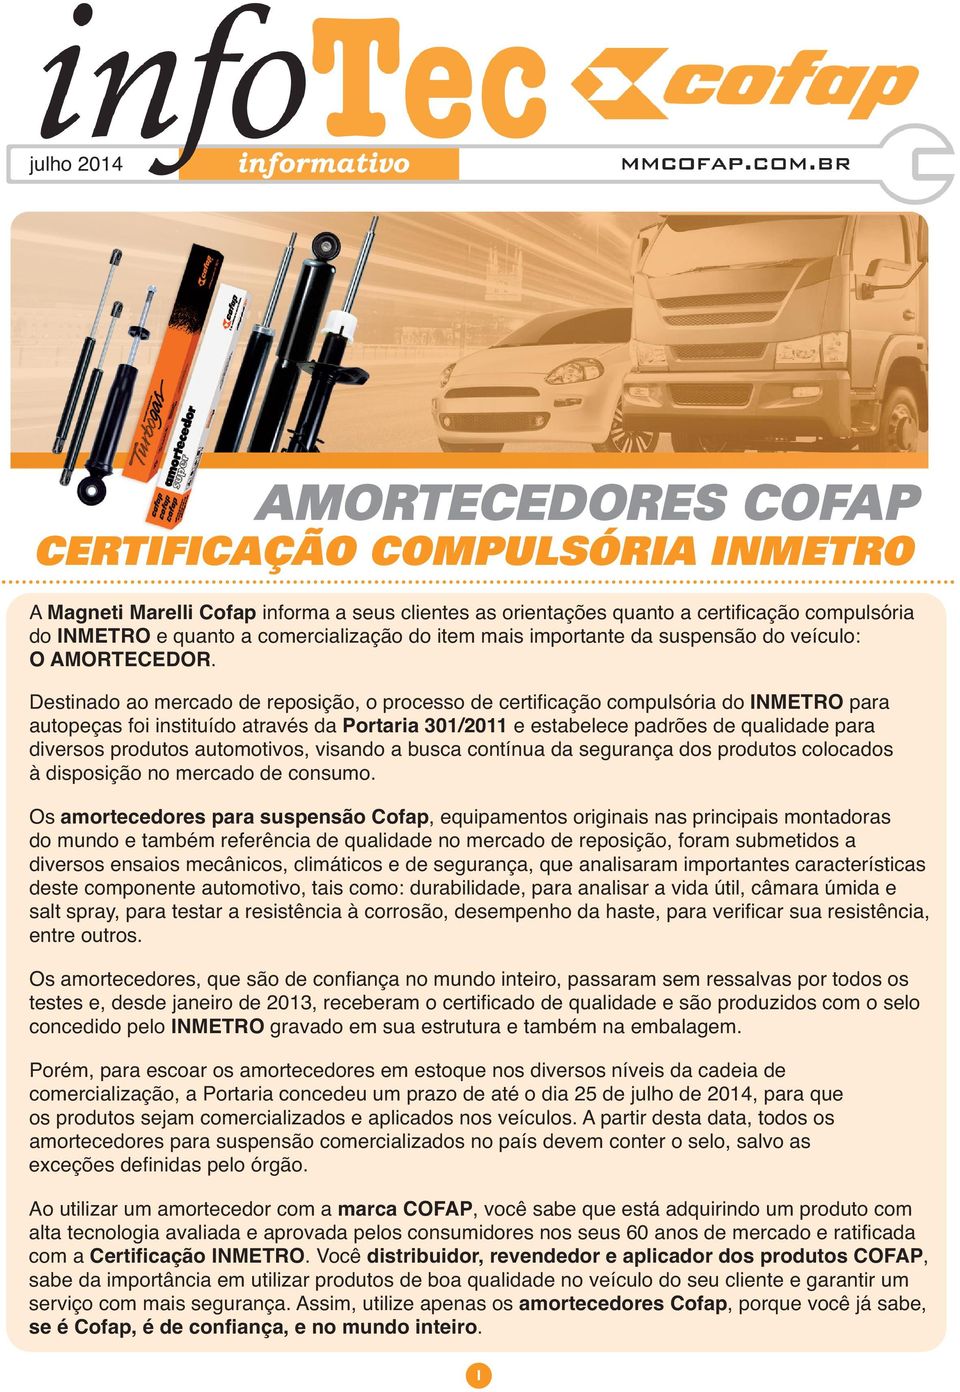 Destinado ao mercado de reposição, o processo de certificação compulsória do INMETRO para autopeças foi instituído através da Portaria 301/2011 e estabelece padrões de qualidade para diversos